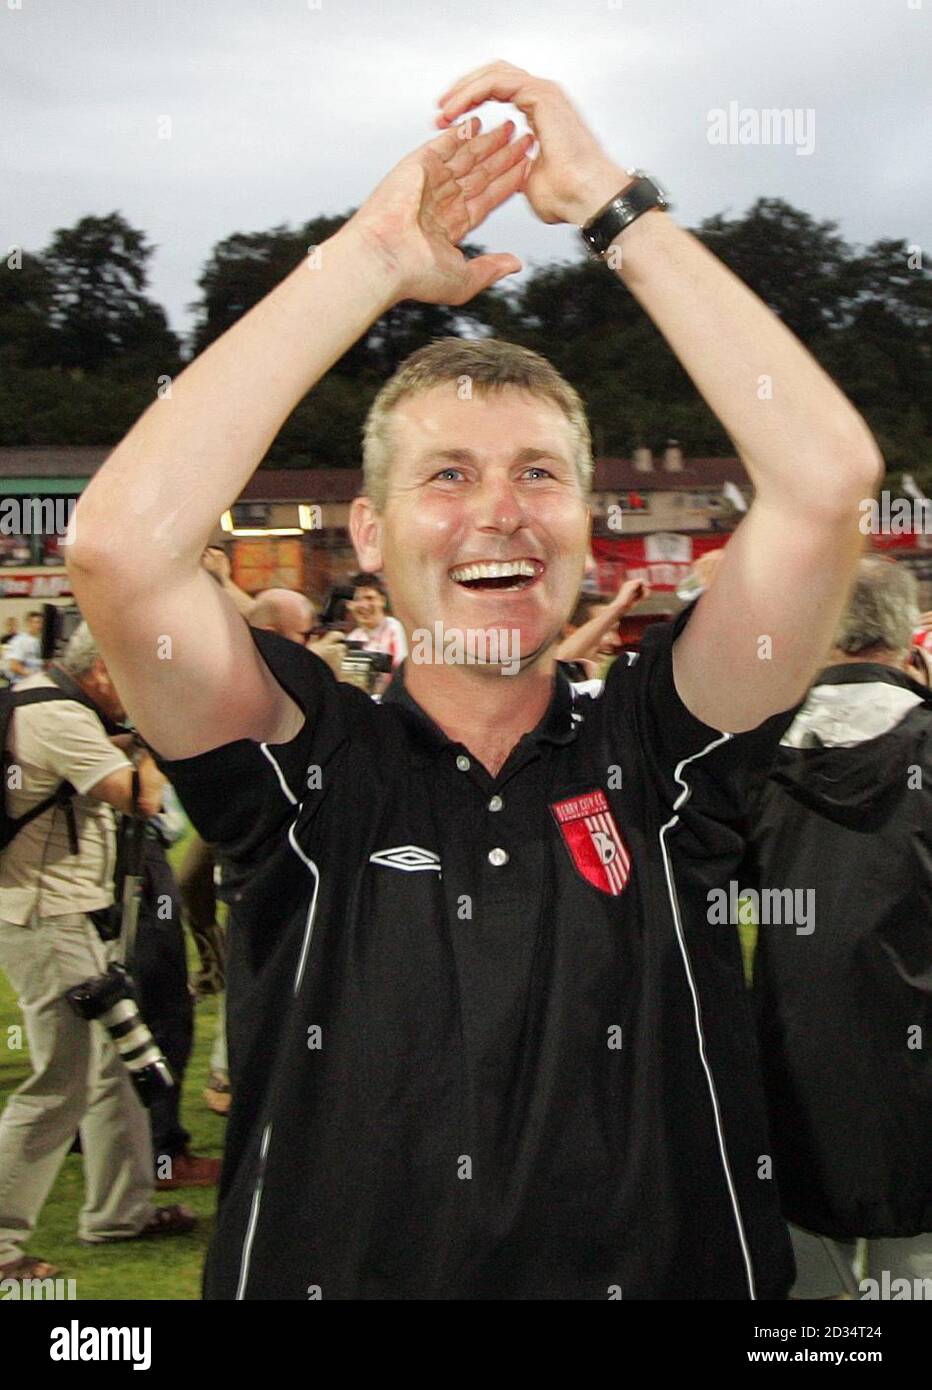 Stephen Kenny, manager di Derry City, festeggia dopo aver sconfitto l'IFK Gothenburg durante la prima partita di qualificazione della Coppa UEFA al Brandywell Stadium di Derry. Foto Stock